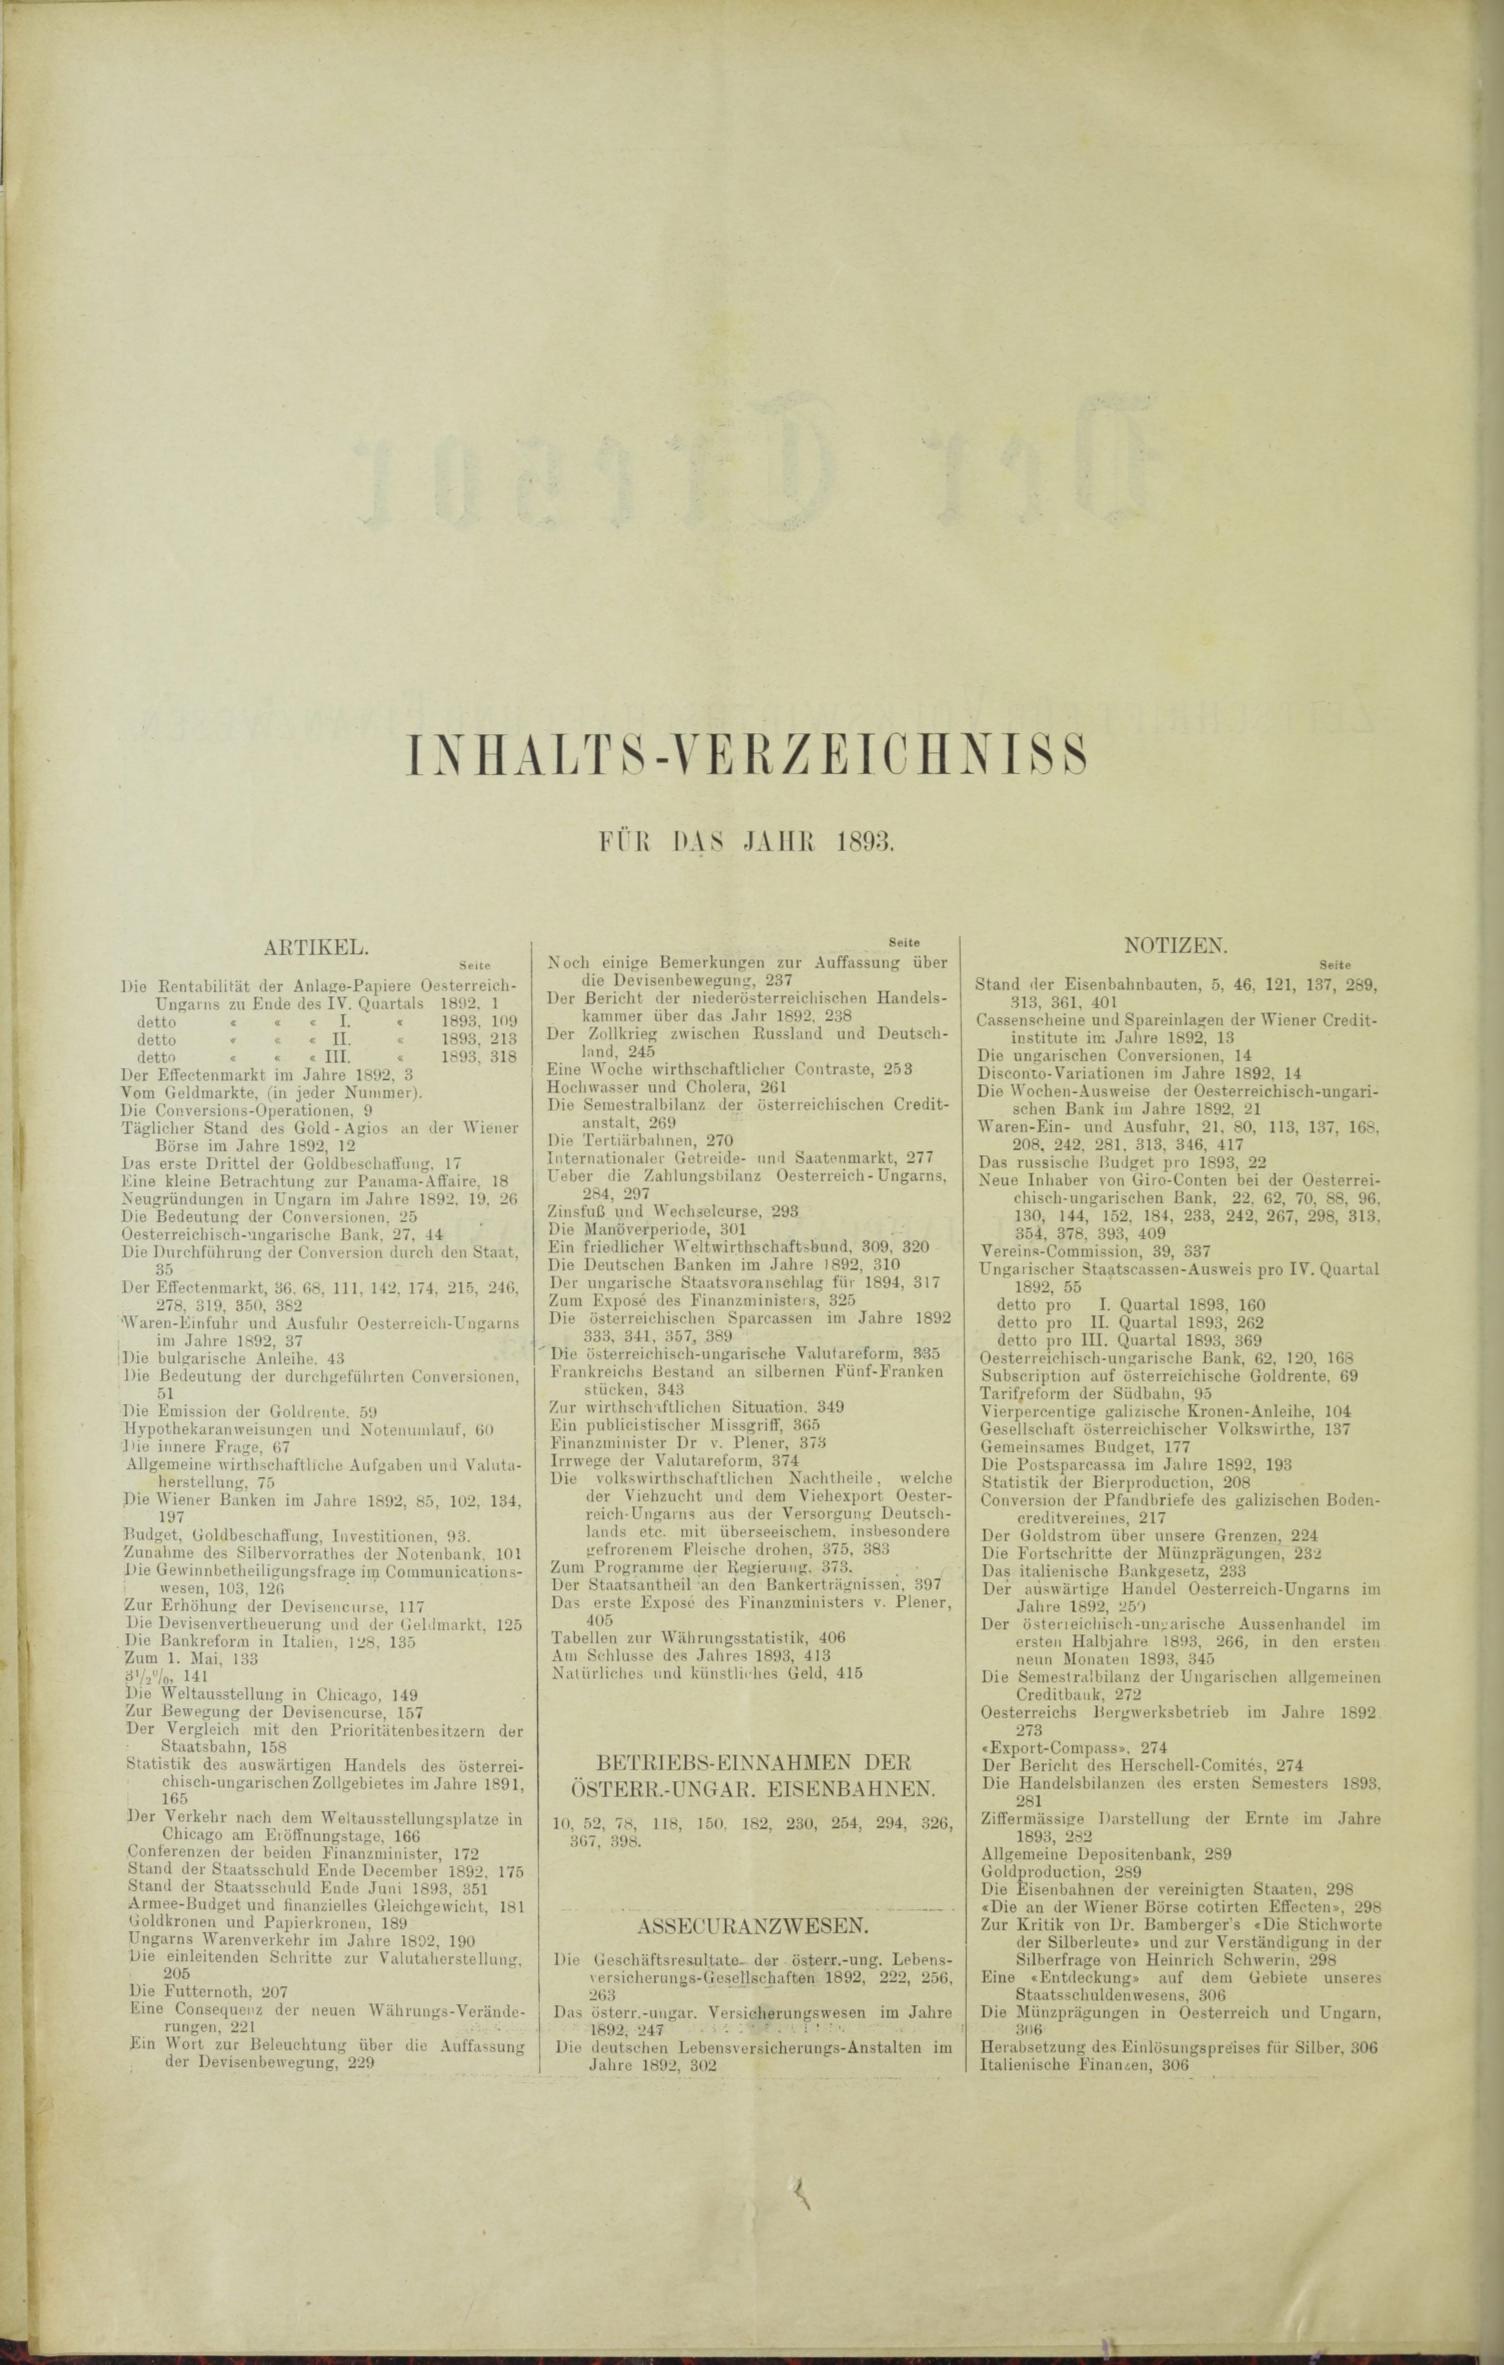 Der Tresor 13.04.1893 - Seite 10